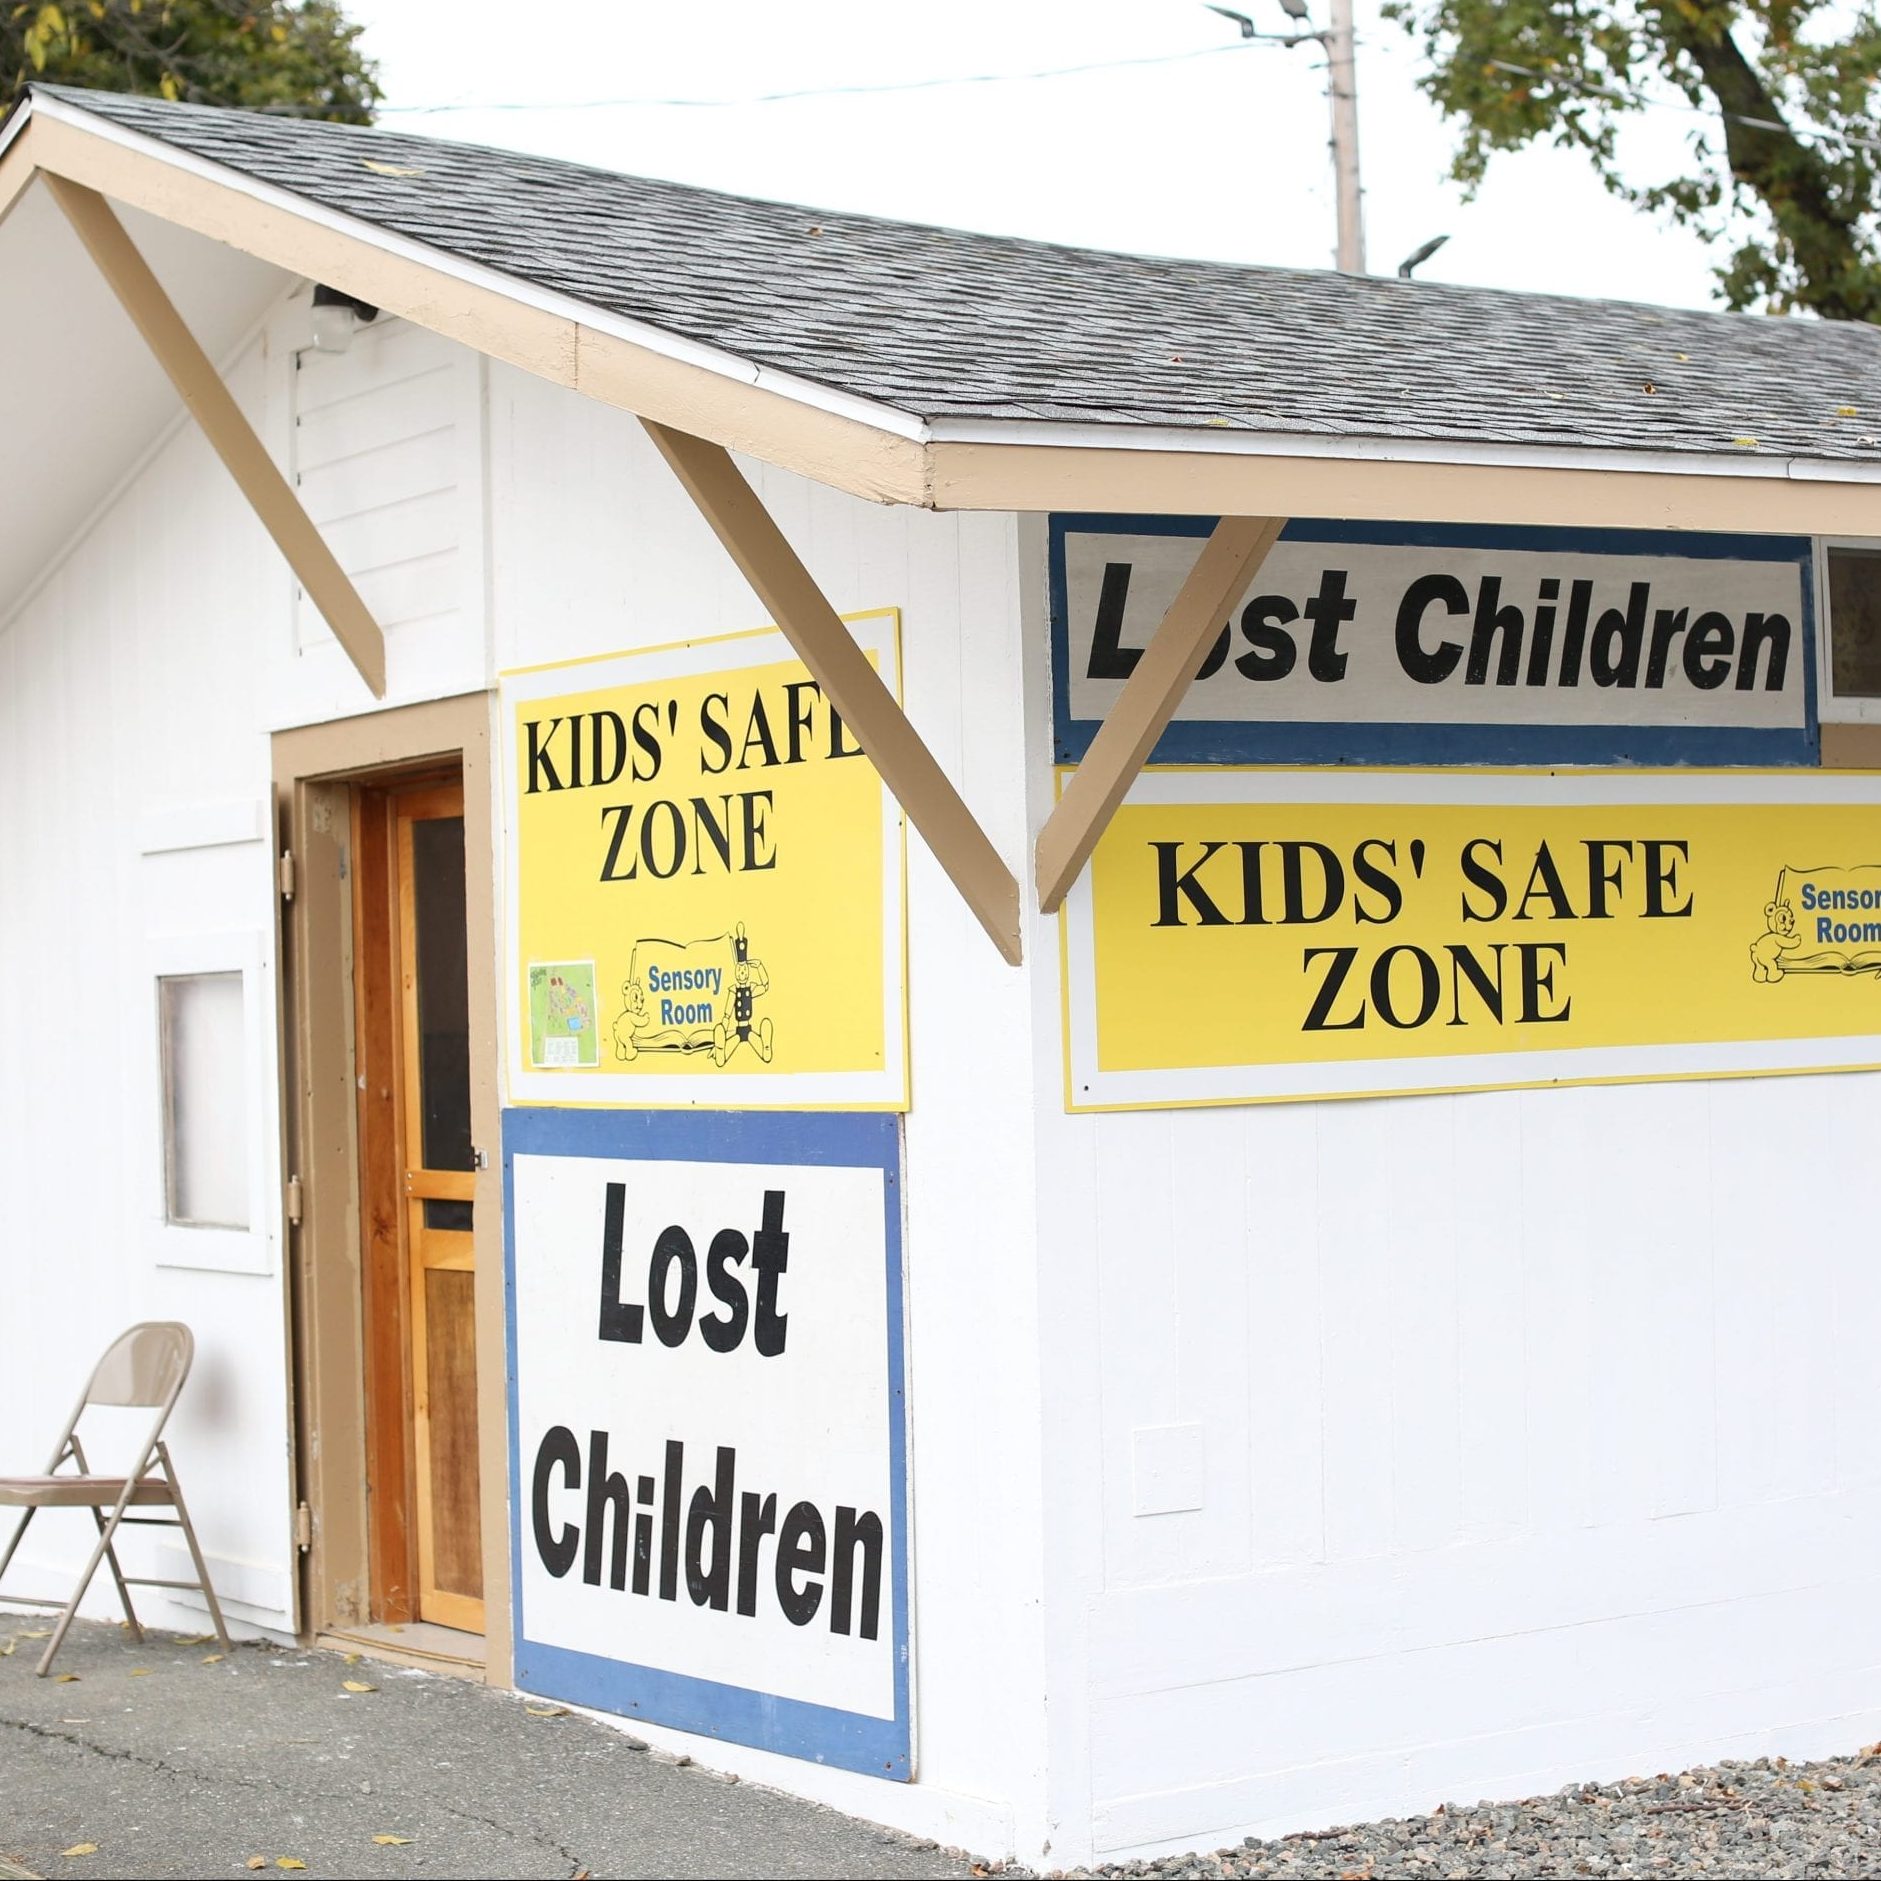 Lost Children, Kids Safe Zone